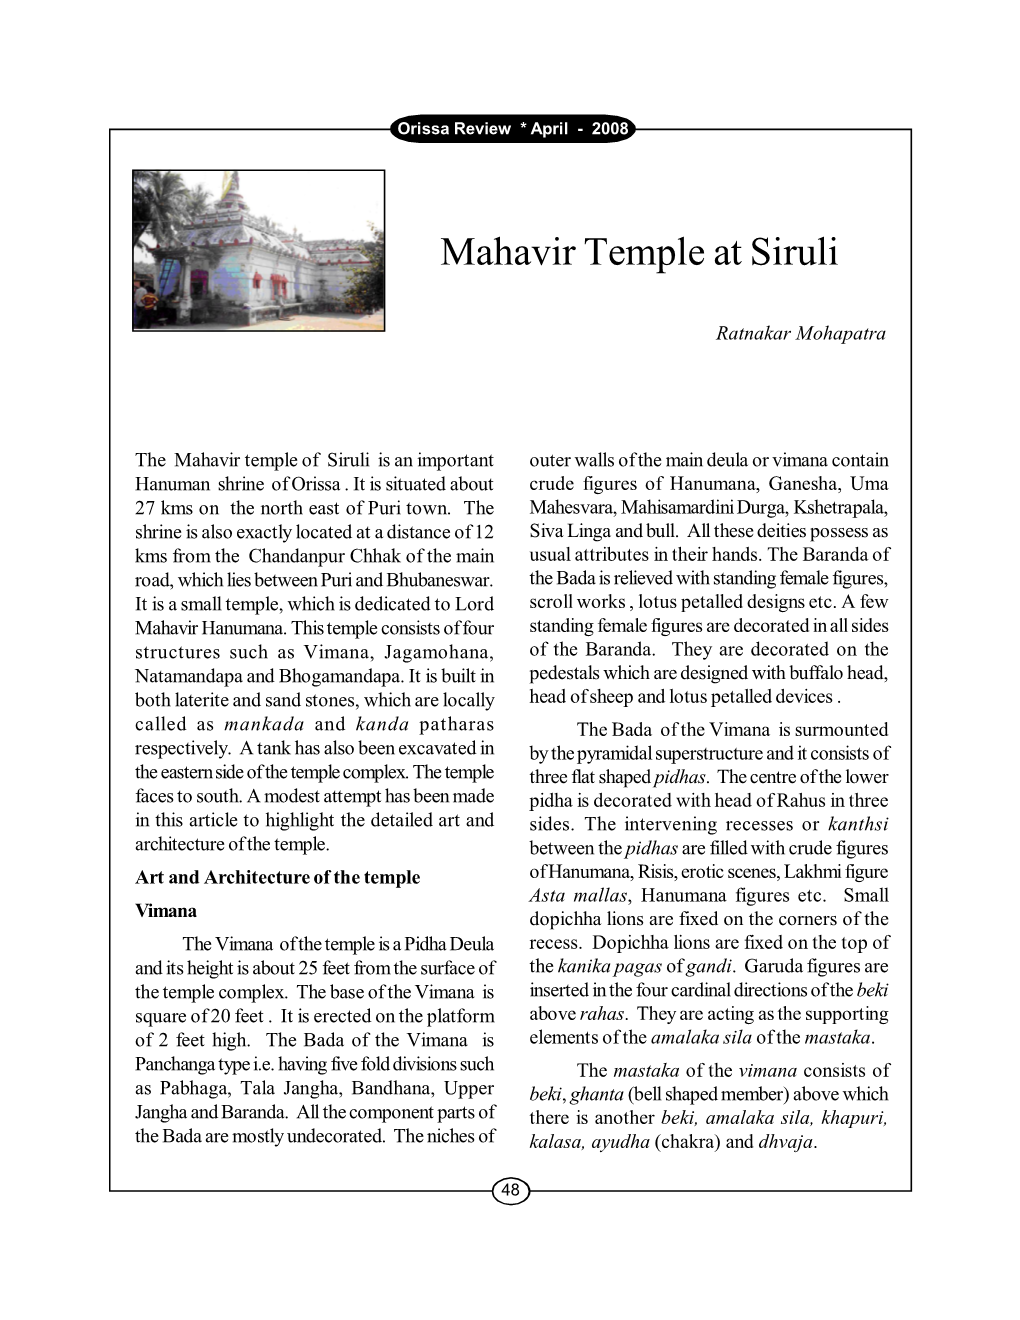 Mahavir Temple at Siruli